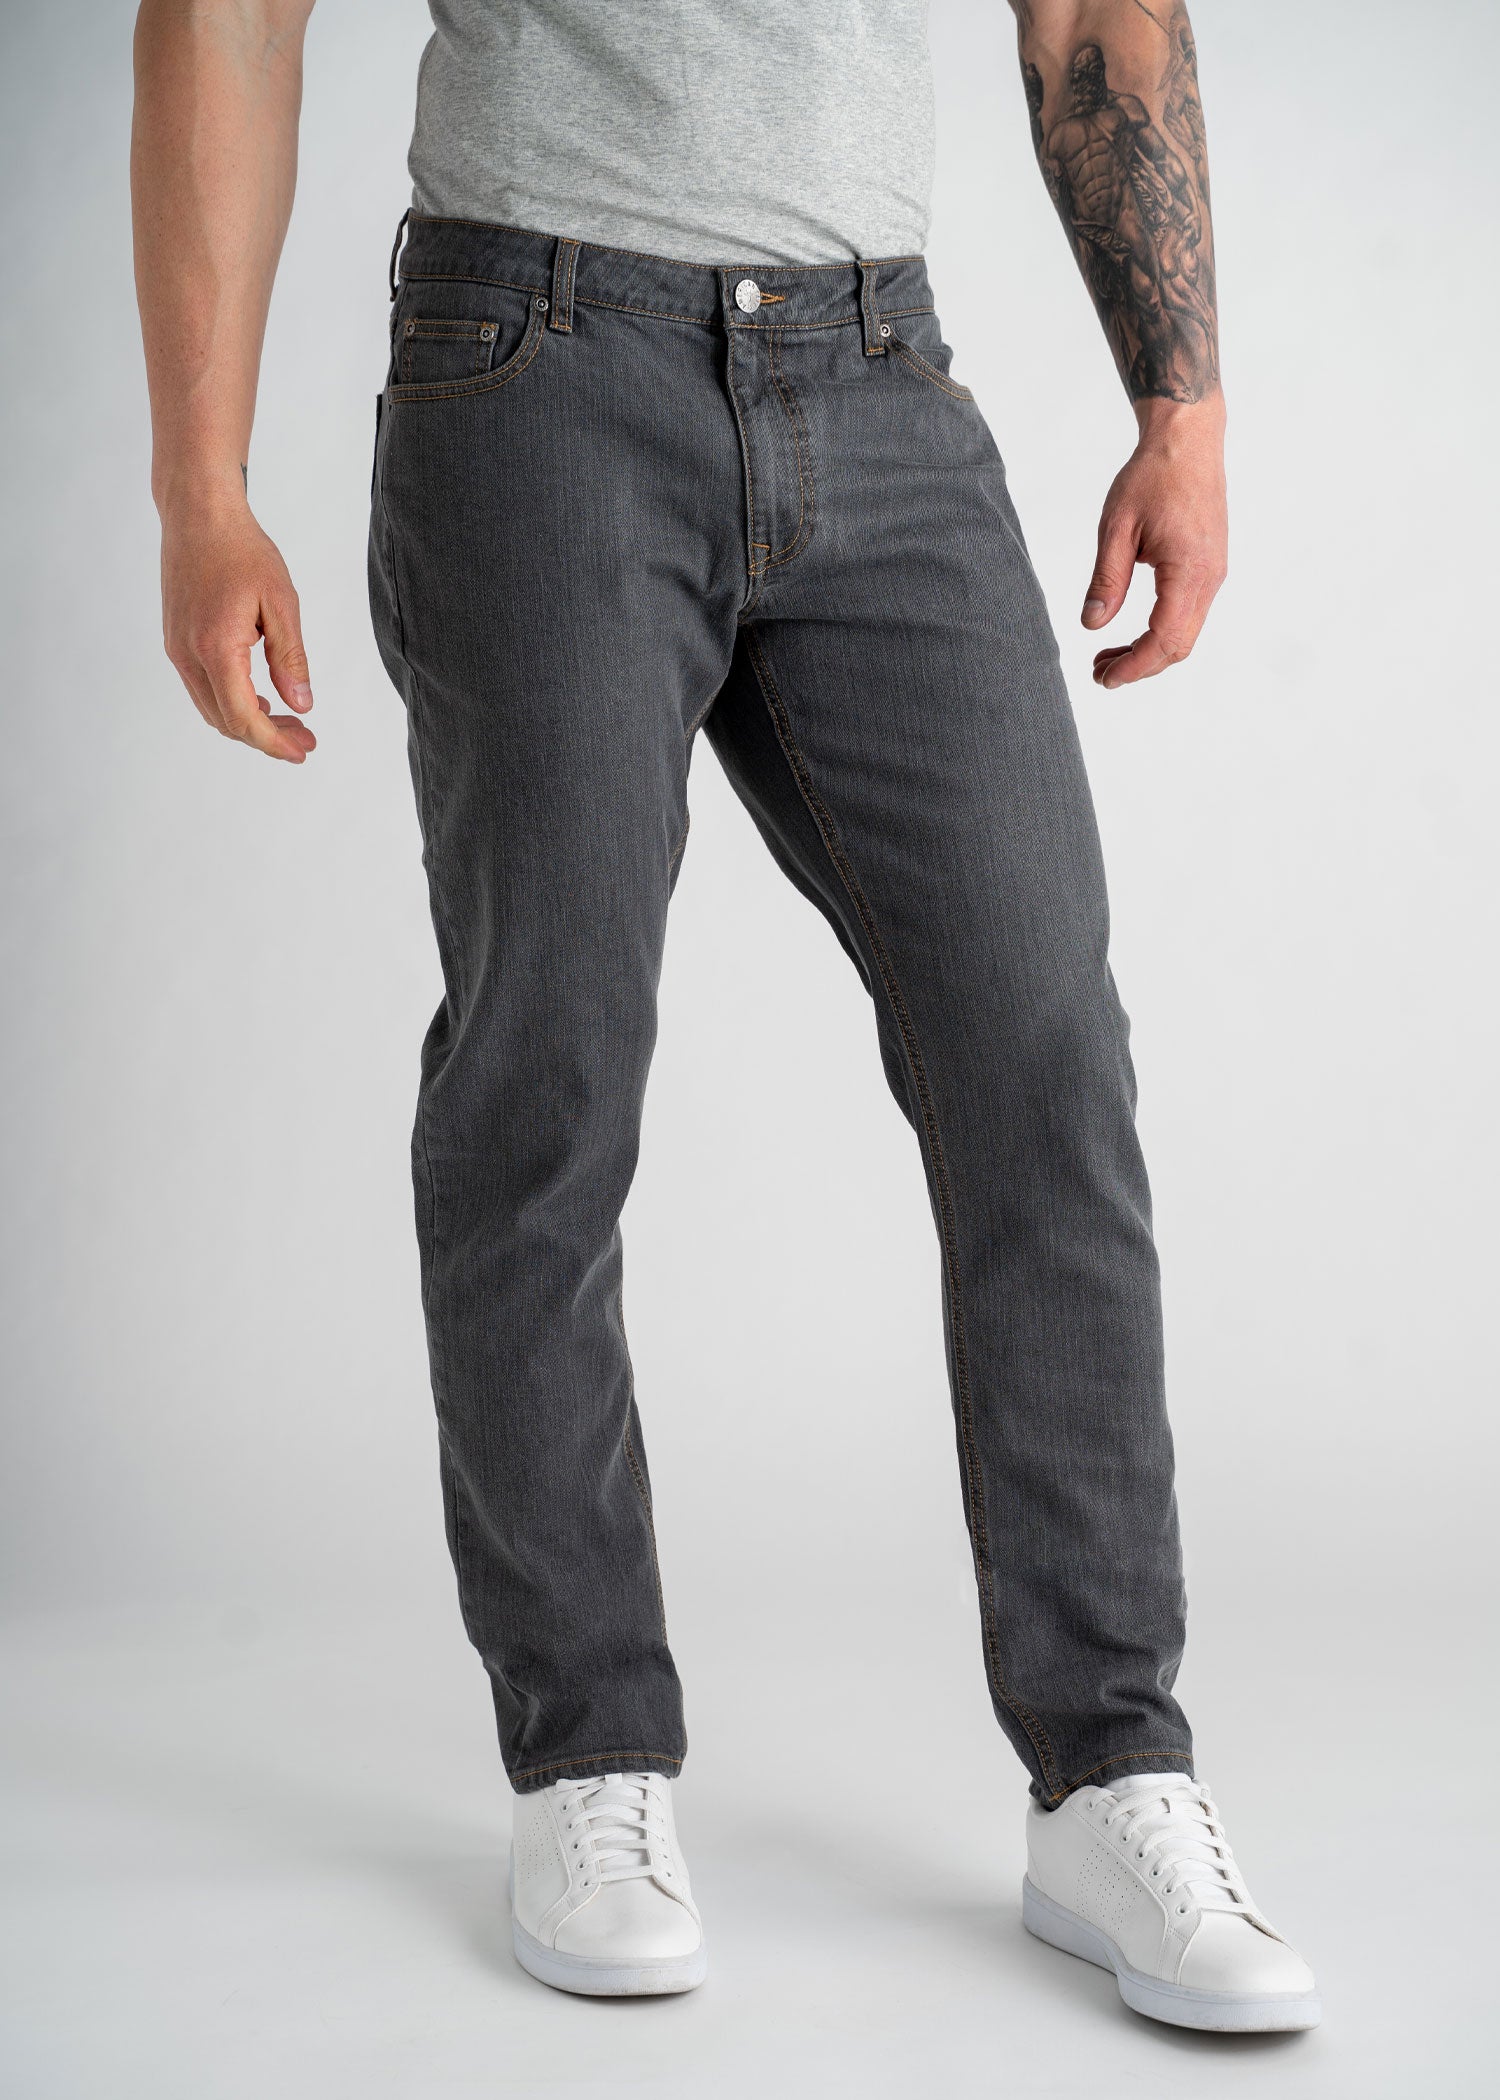 Men's Grey Jeans